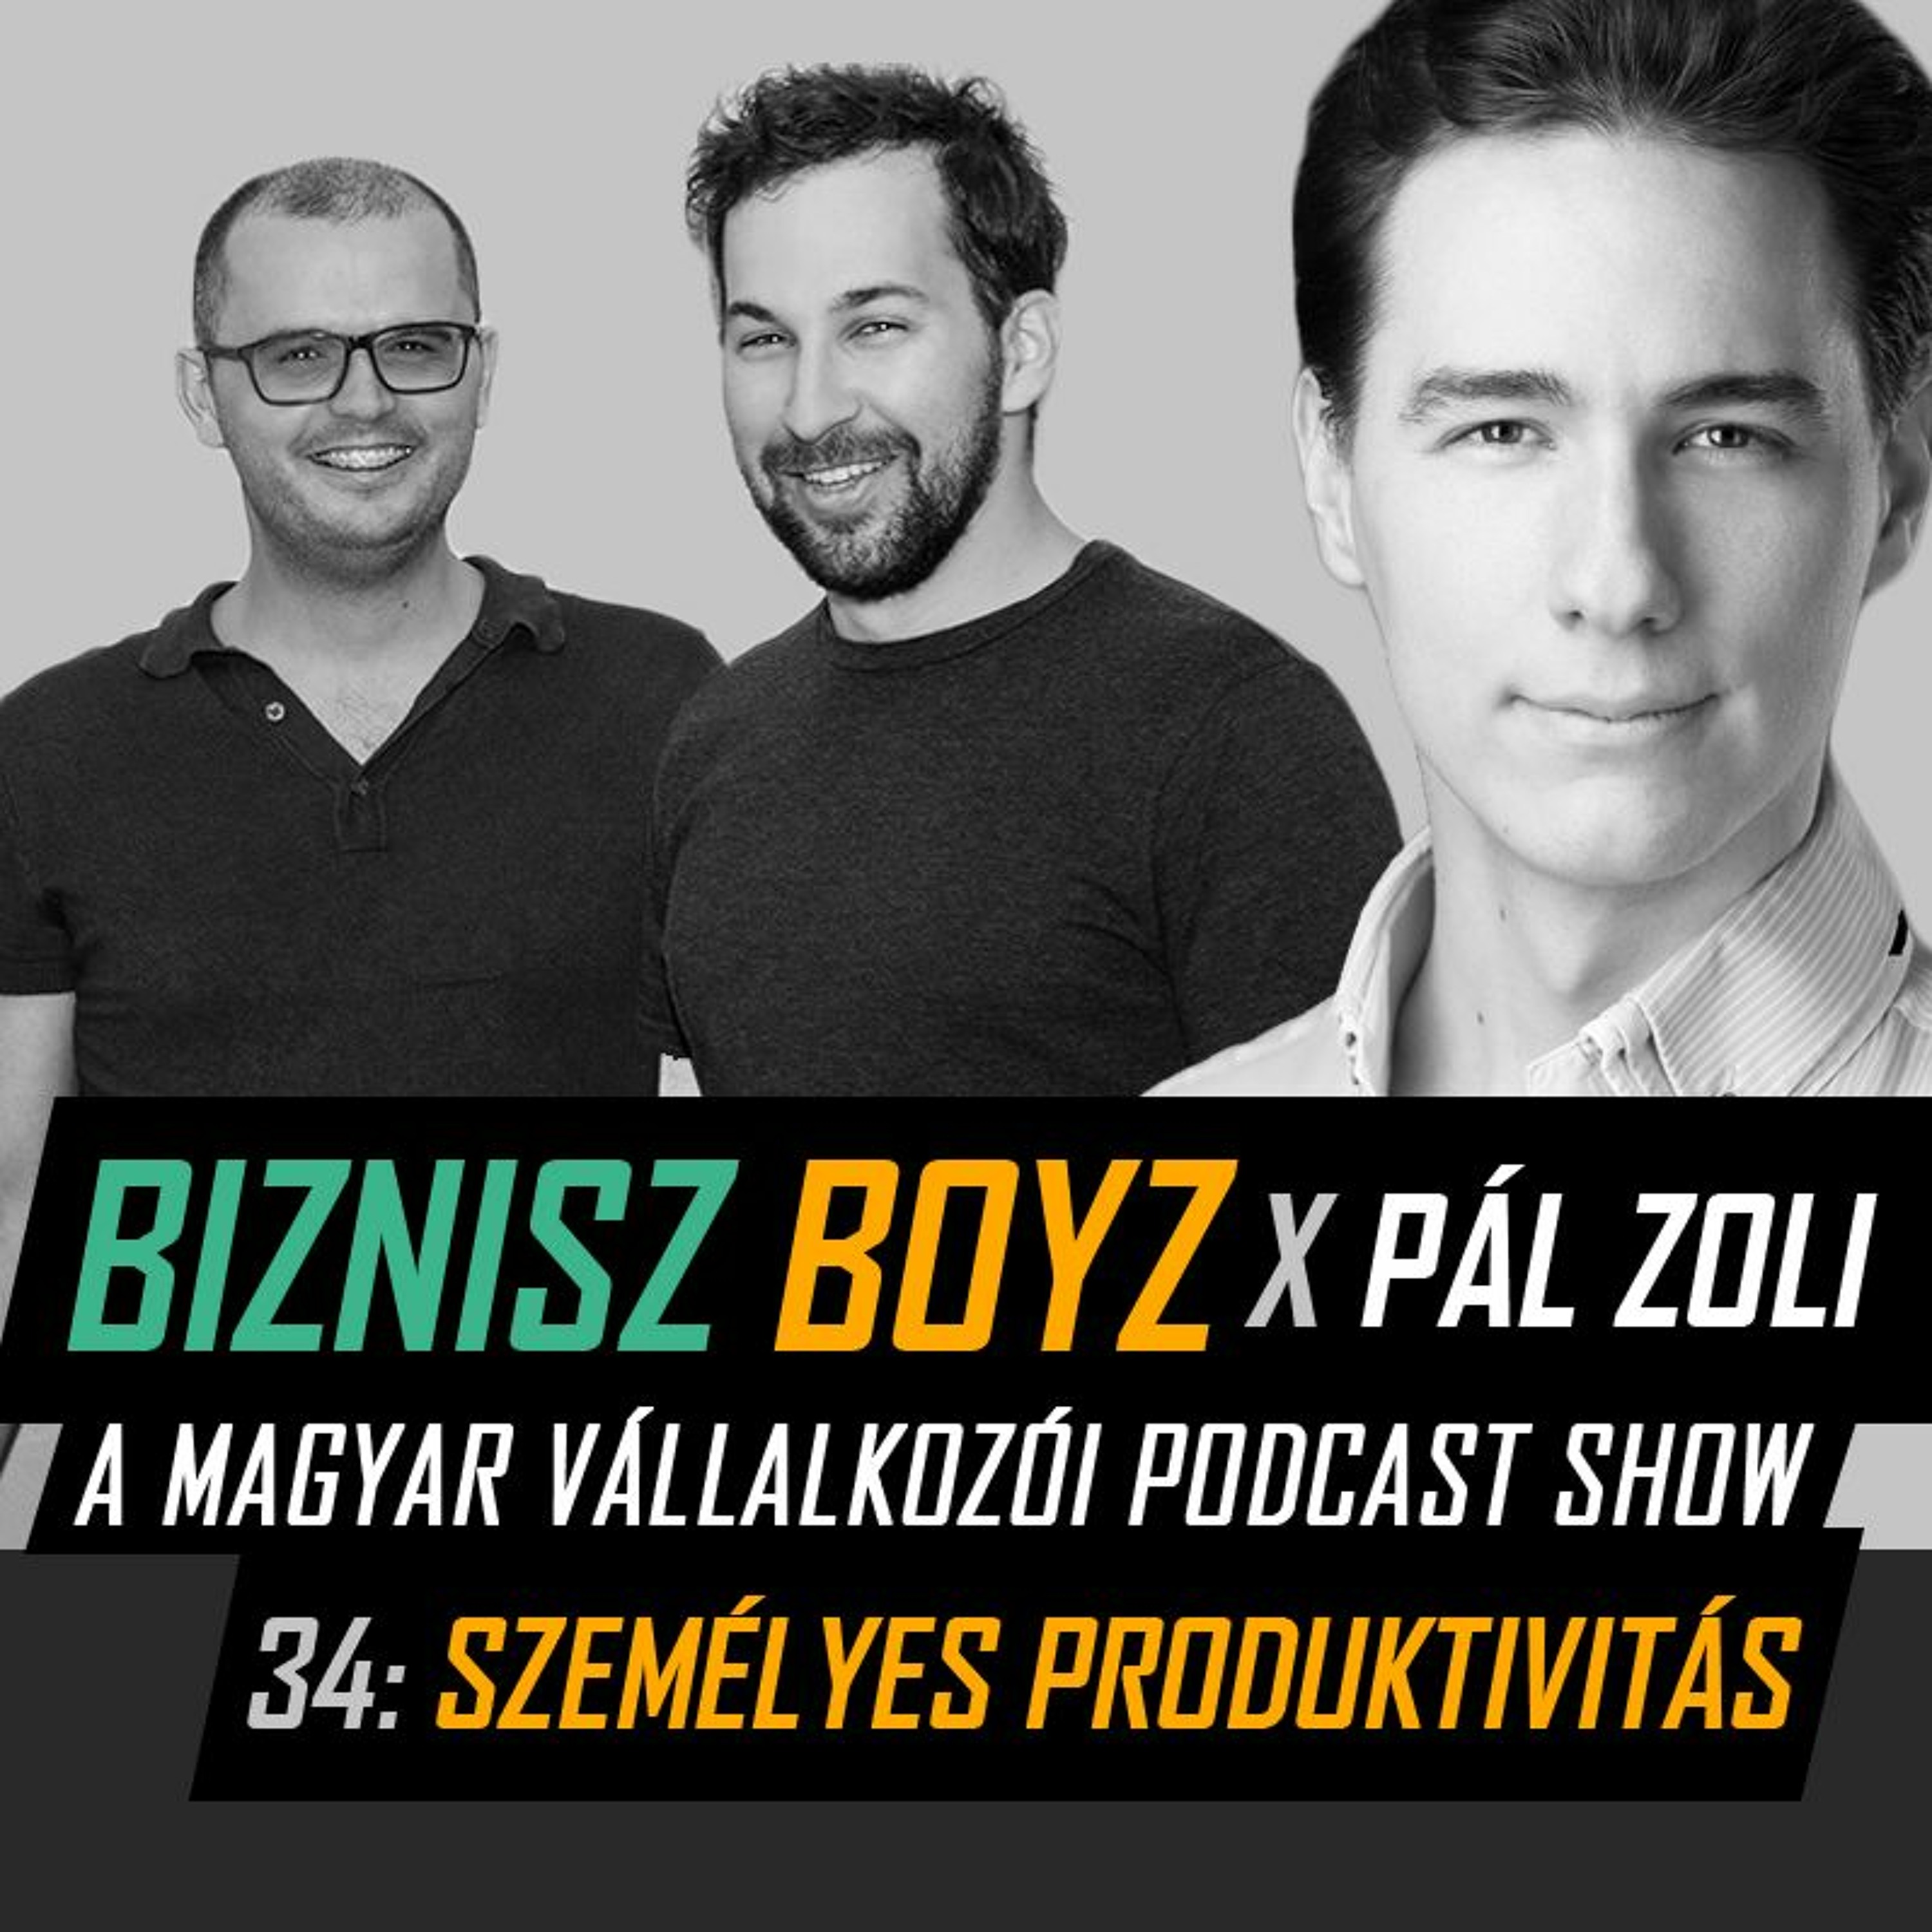 34. Személyes produktivitás - BB x Pál Zoli | Biznisz Boyz Podcast